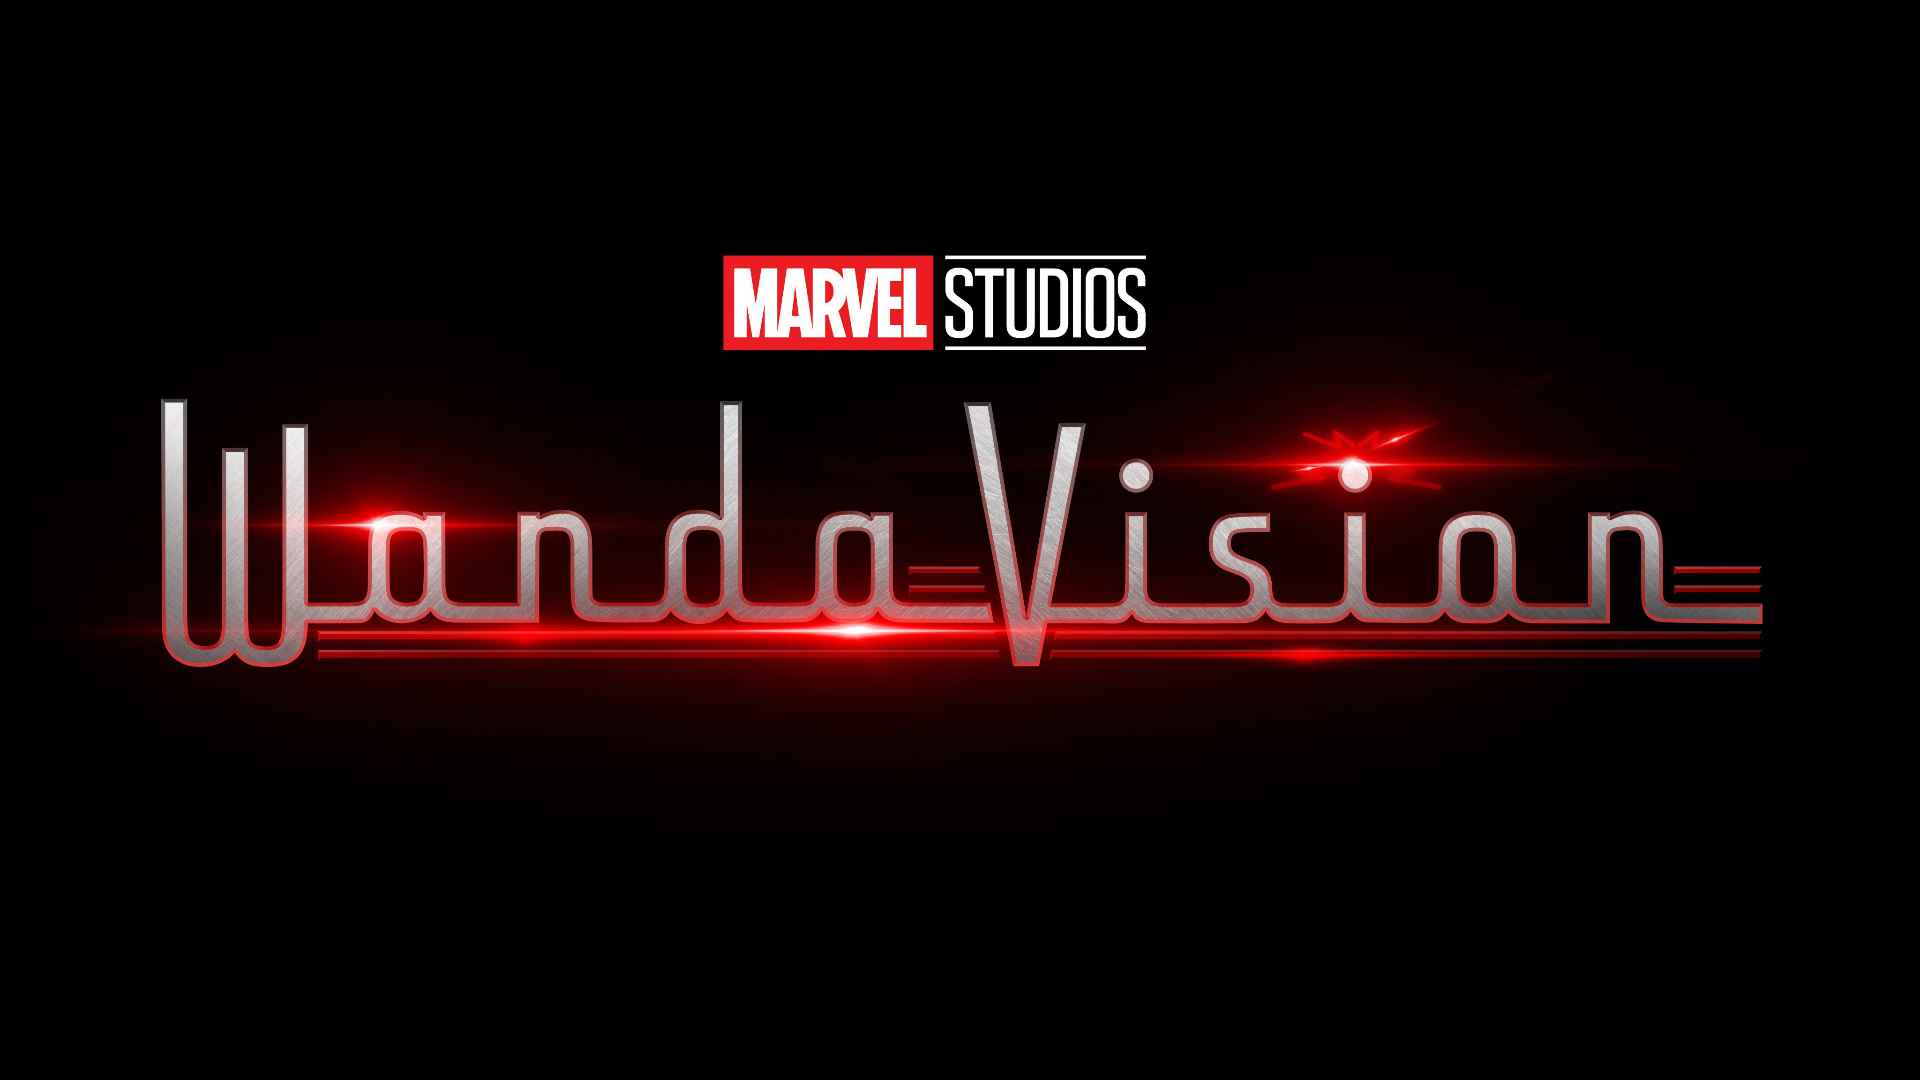 WandaVision Logo